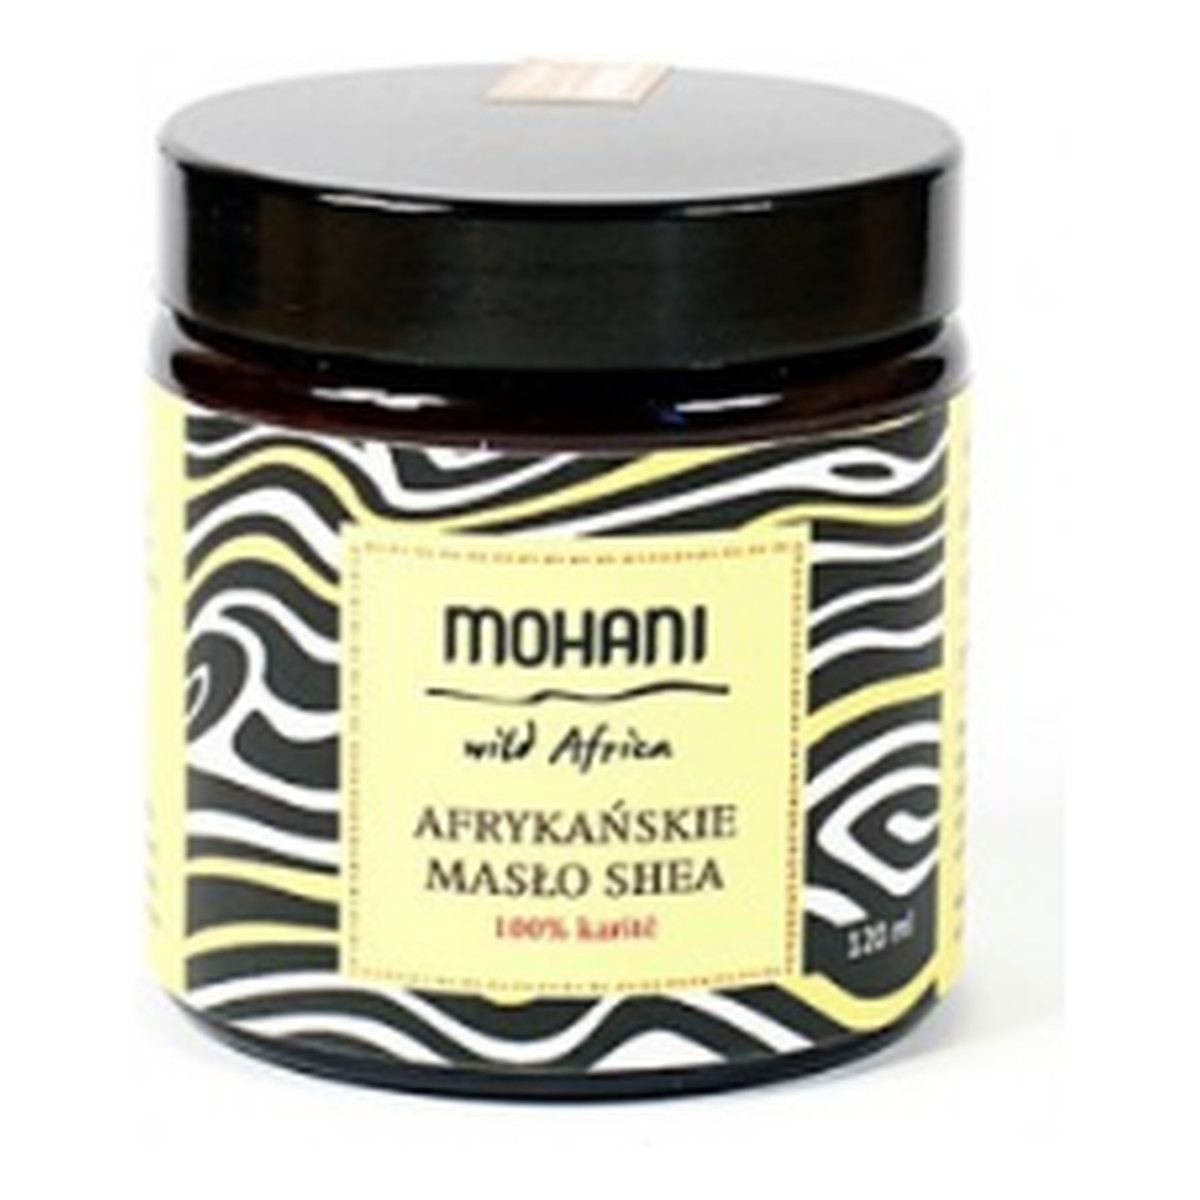 Mohani Organiczne Nierafinowane Afrykańskie Masło Shea Karite 120ml